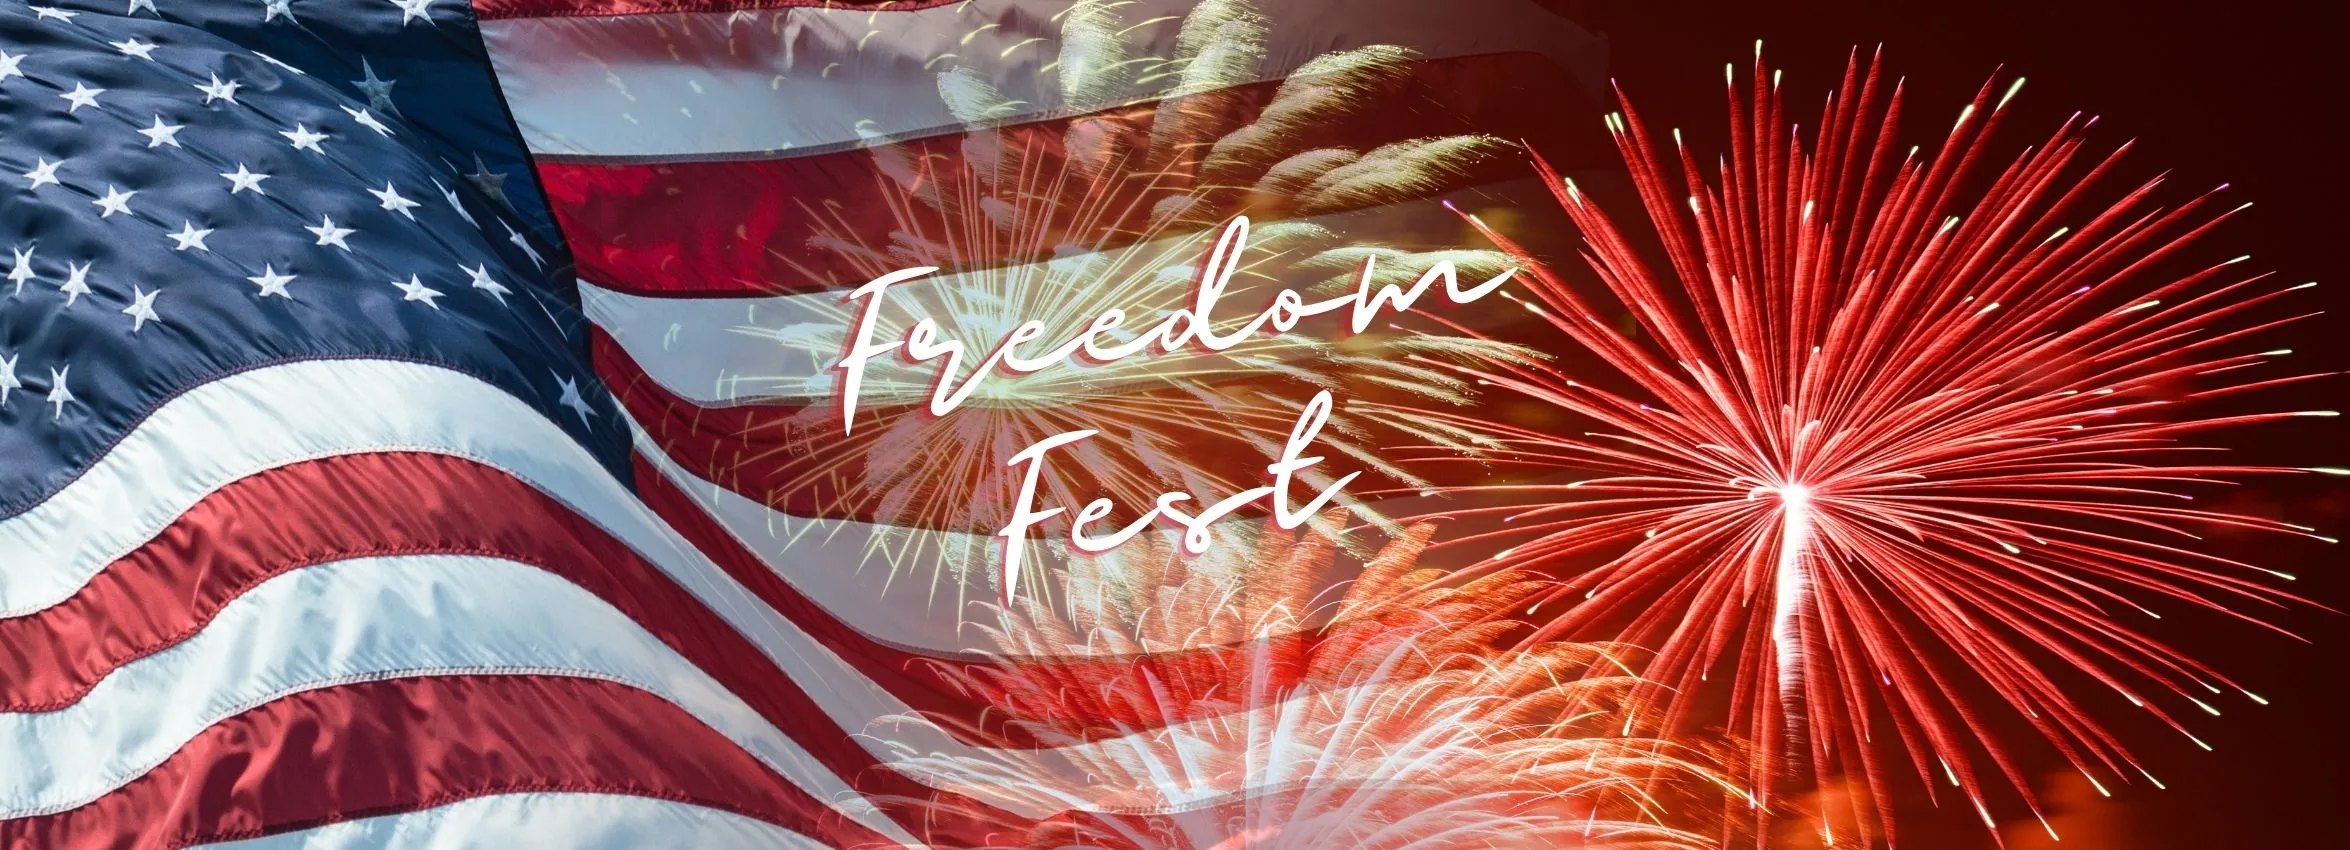 Freedom-Fest_Desktop_ET